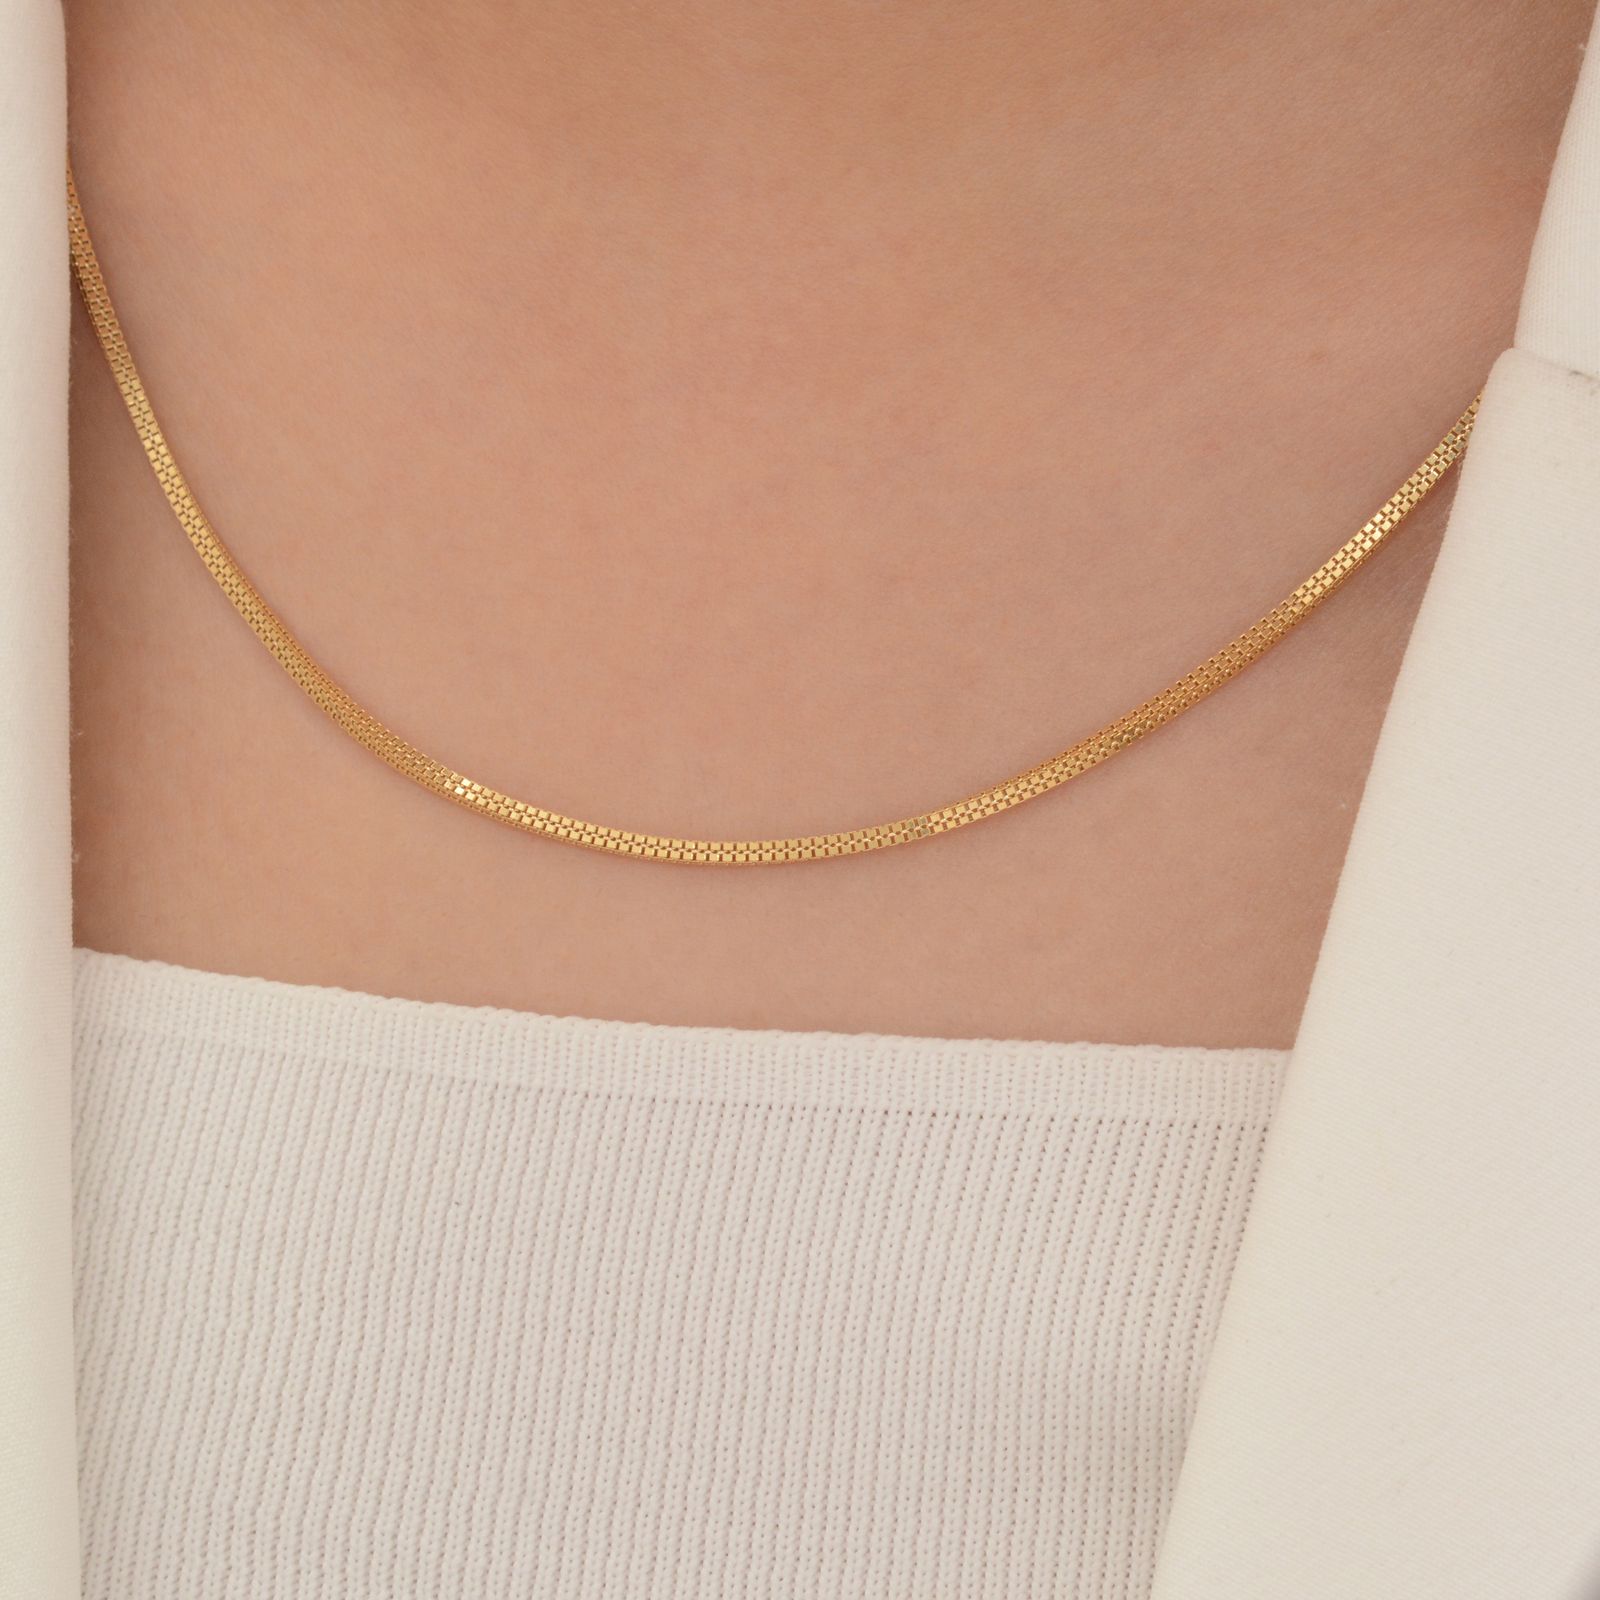 زنجیر طلا 18 عیار زنانه طلای مستجابی مدل ونیزی چهارگوش کد M50 -  - 3